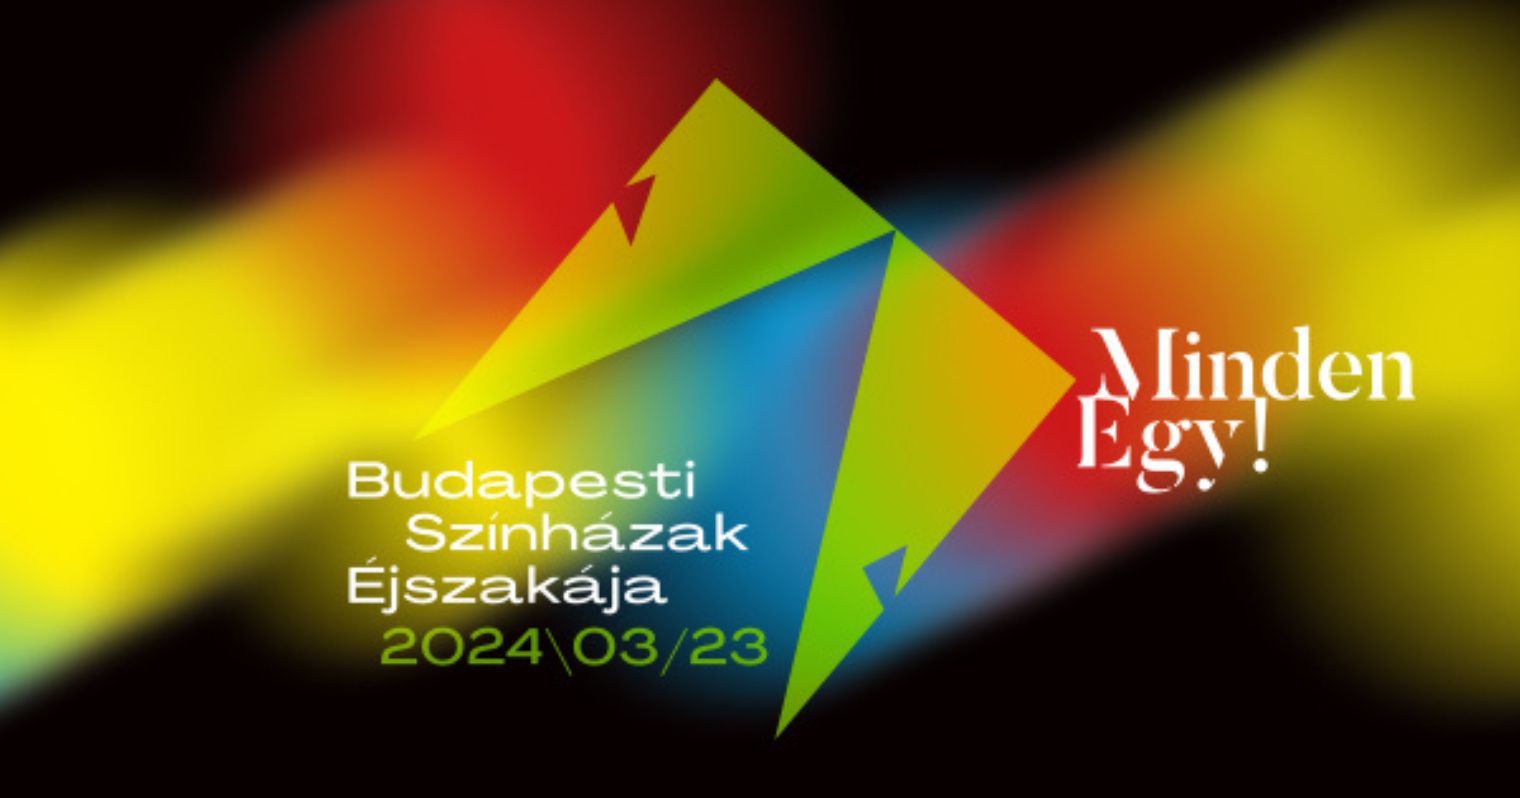 Budapesti Színházak Éjszakája logója és szlogenje, háttérben pedig fekete alapon elmosódott színes foltok.